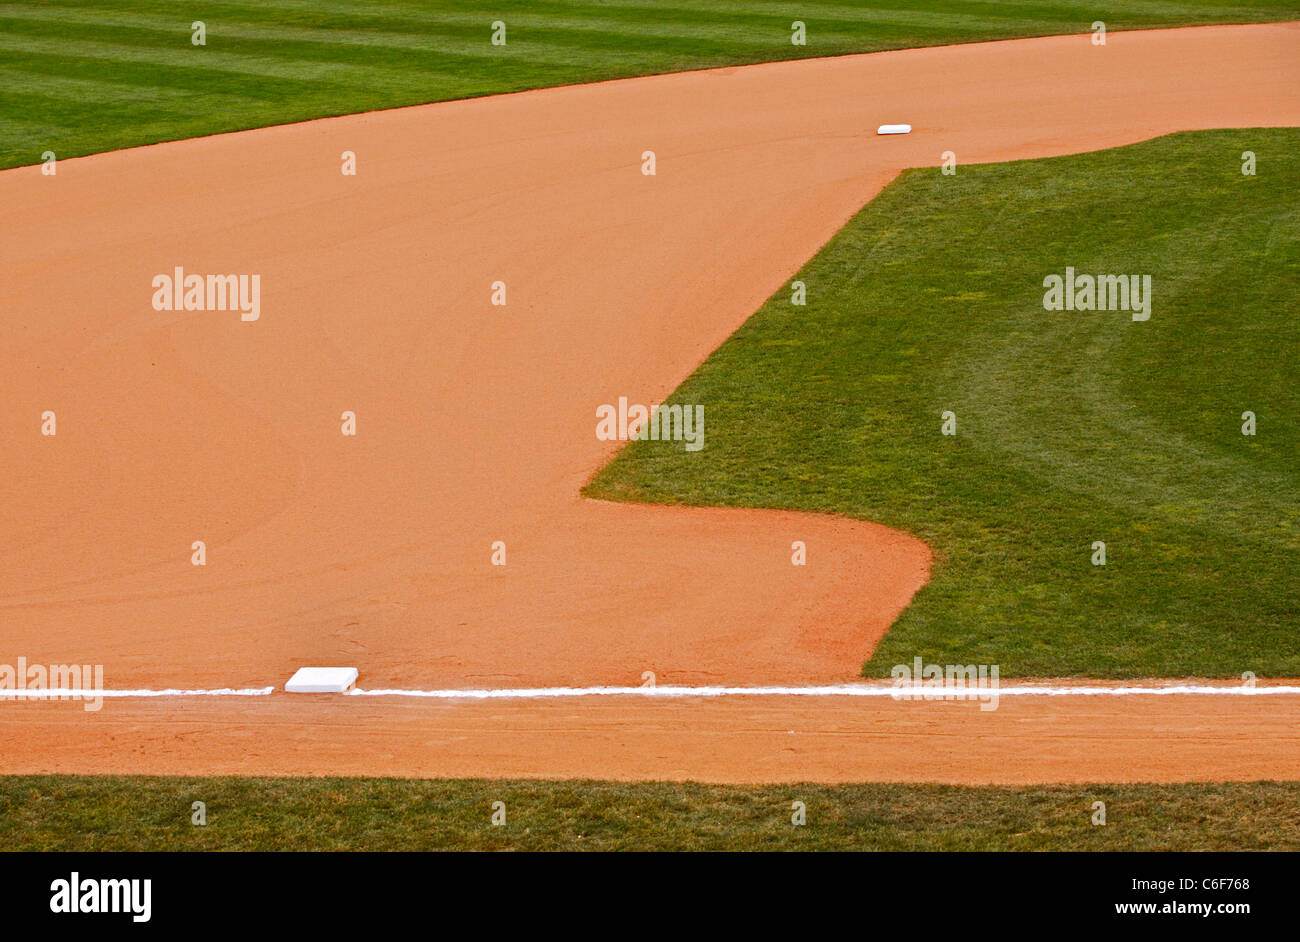 Una porción de un parque de béisbol la suciedad y césped infield mostrando la segunda y tercera bases. Foto de stock